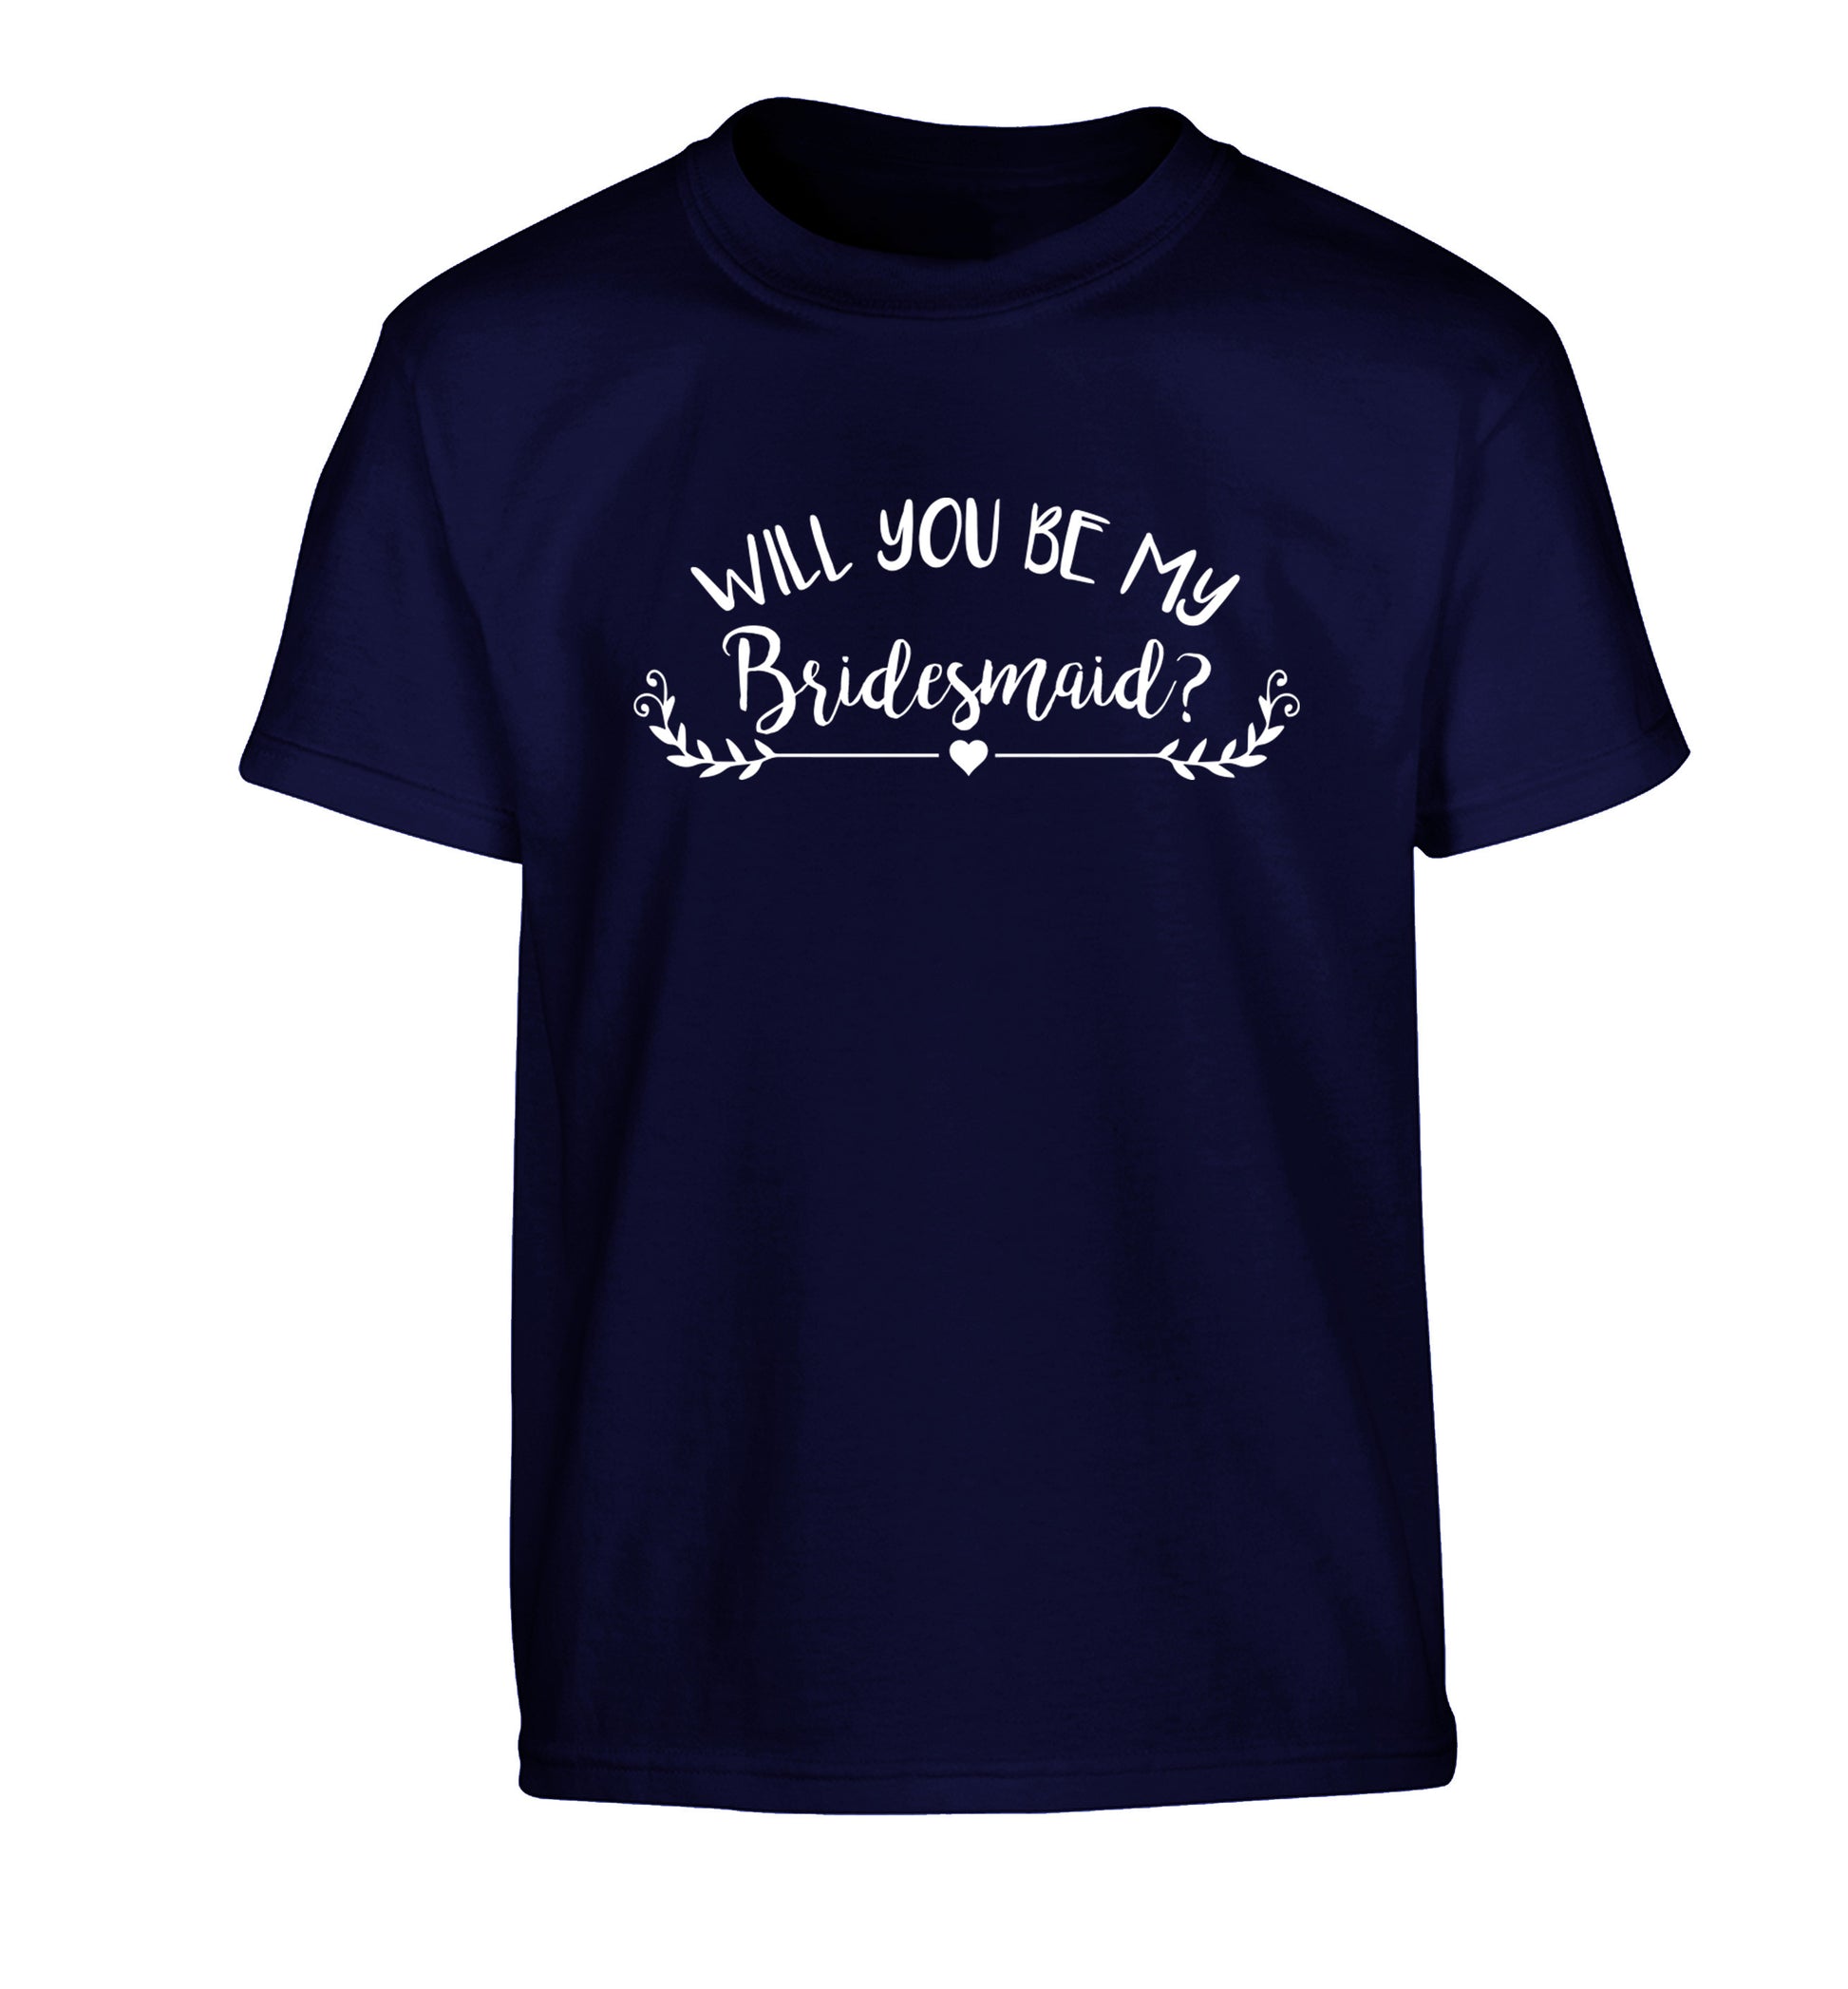 Will you be my bridesmaid? Children's navy Tshirt 12-14 Years